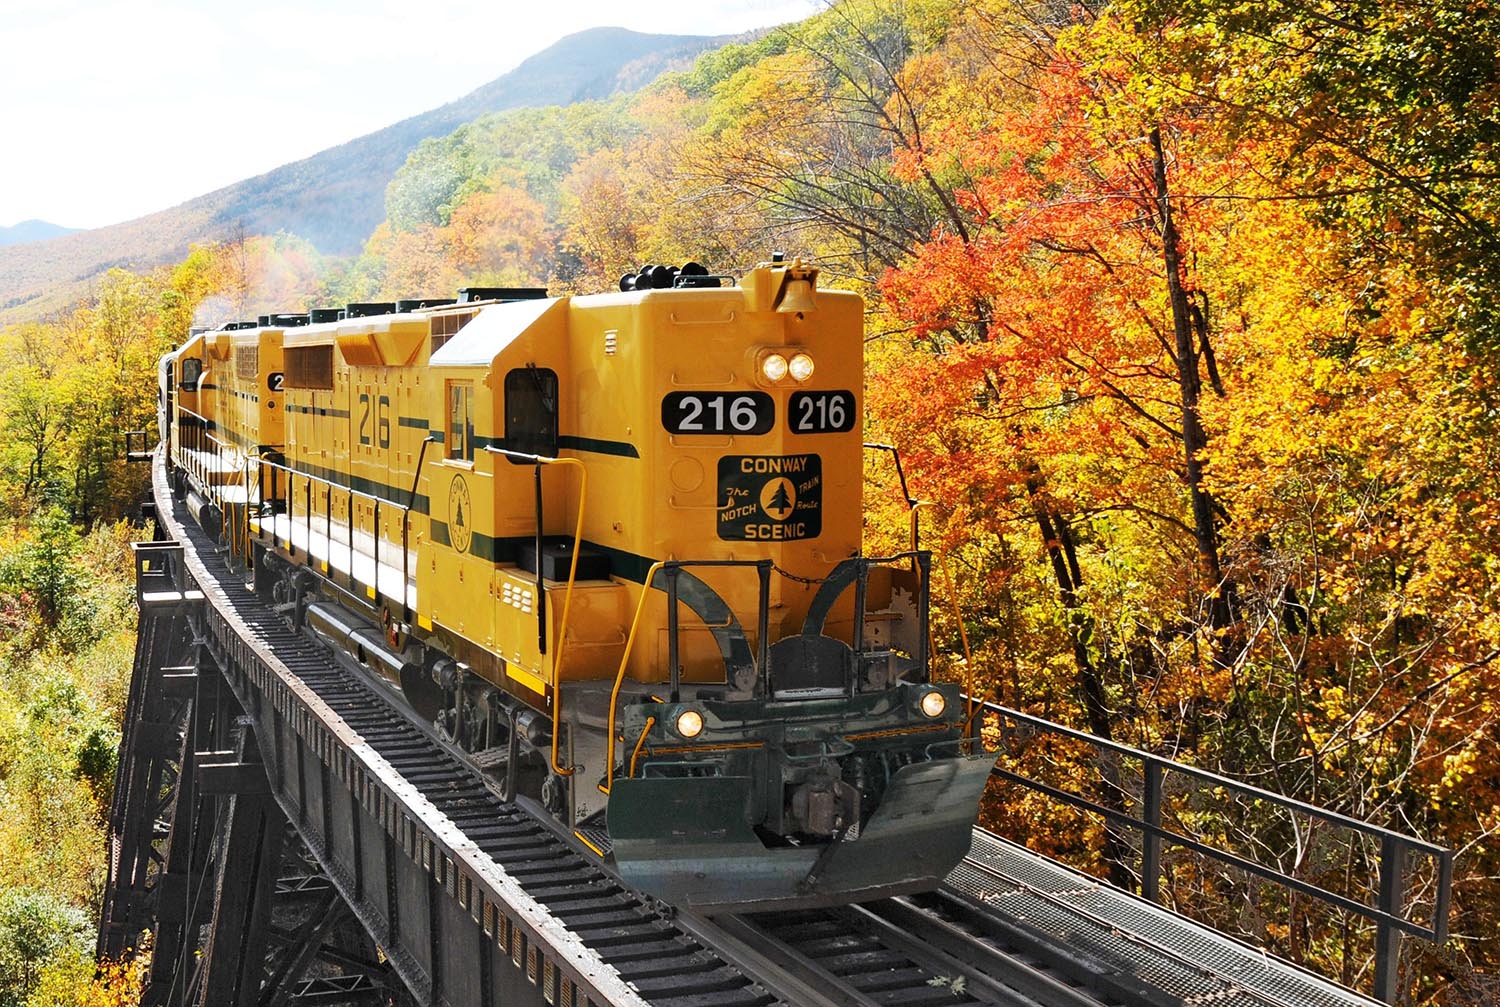 Yellow train riding through yellow and orange foliage